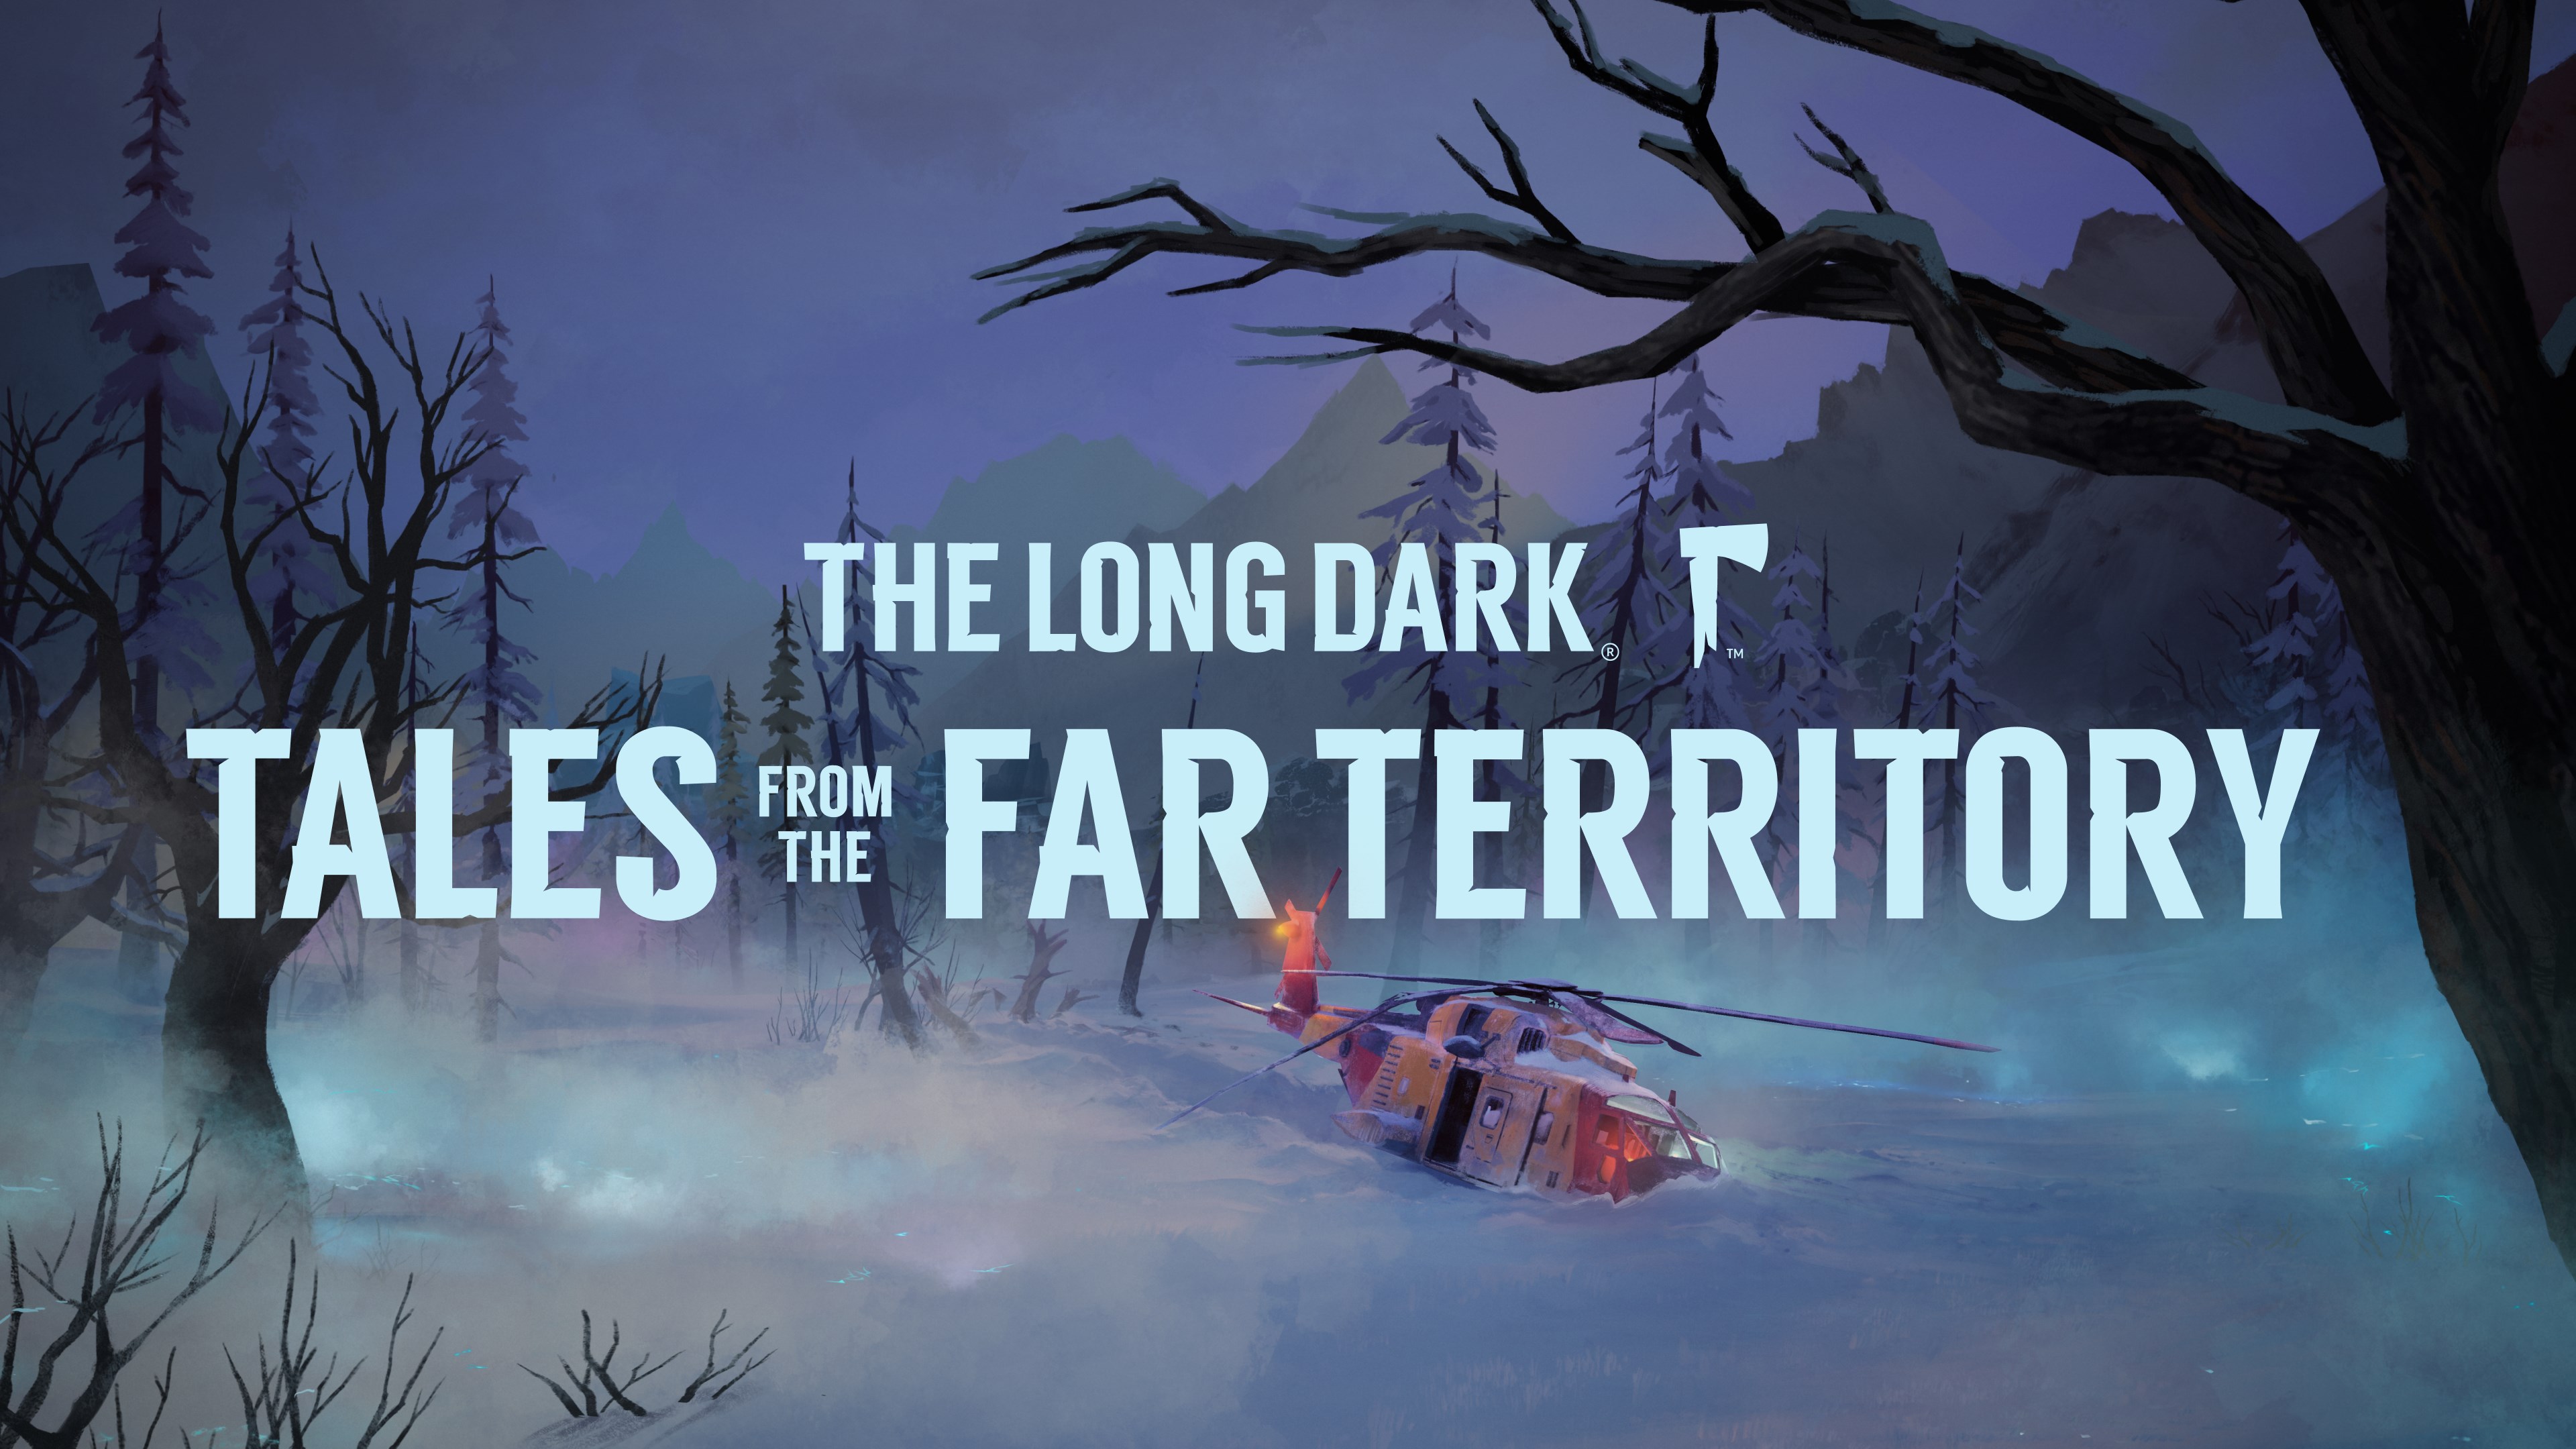 Far territory. The long Dark. The long Dark Tales from the far Territory карта. The long Dark шапка. The long Dark лето.